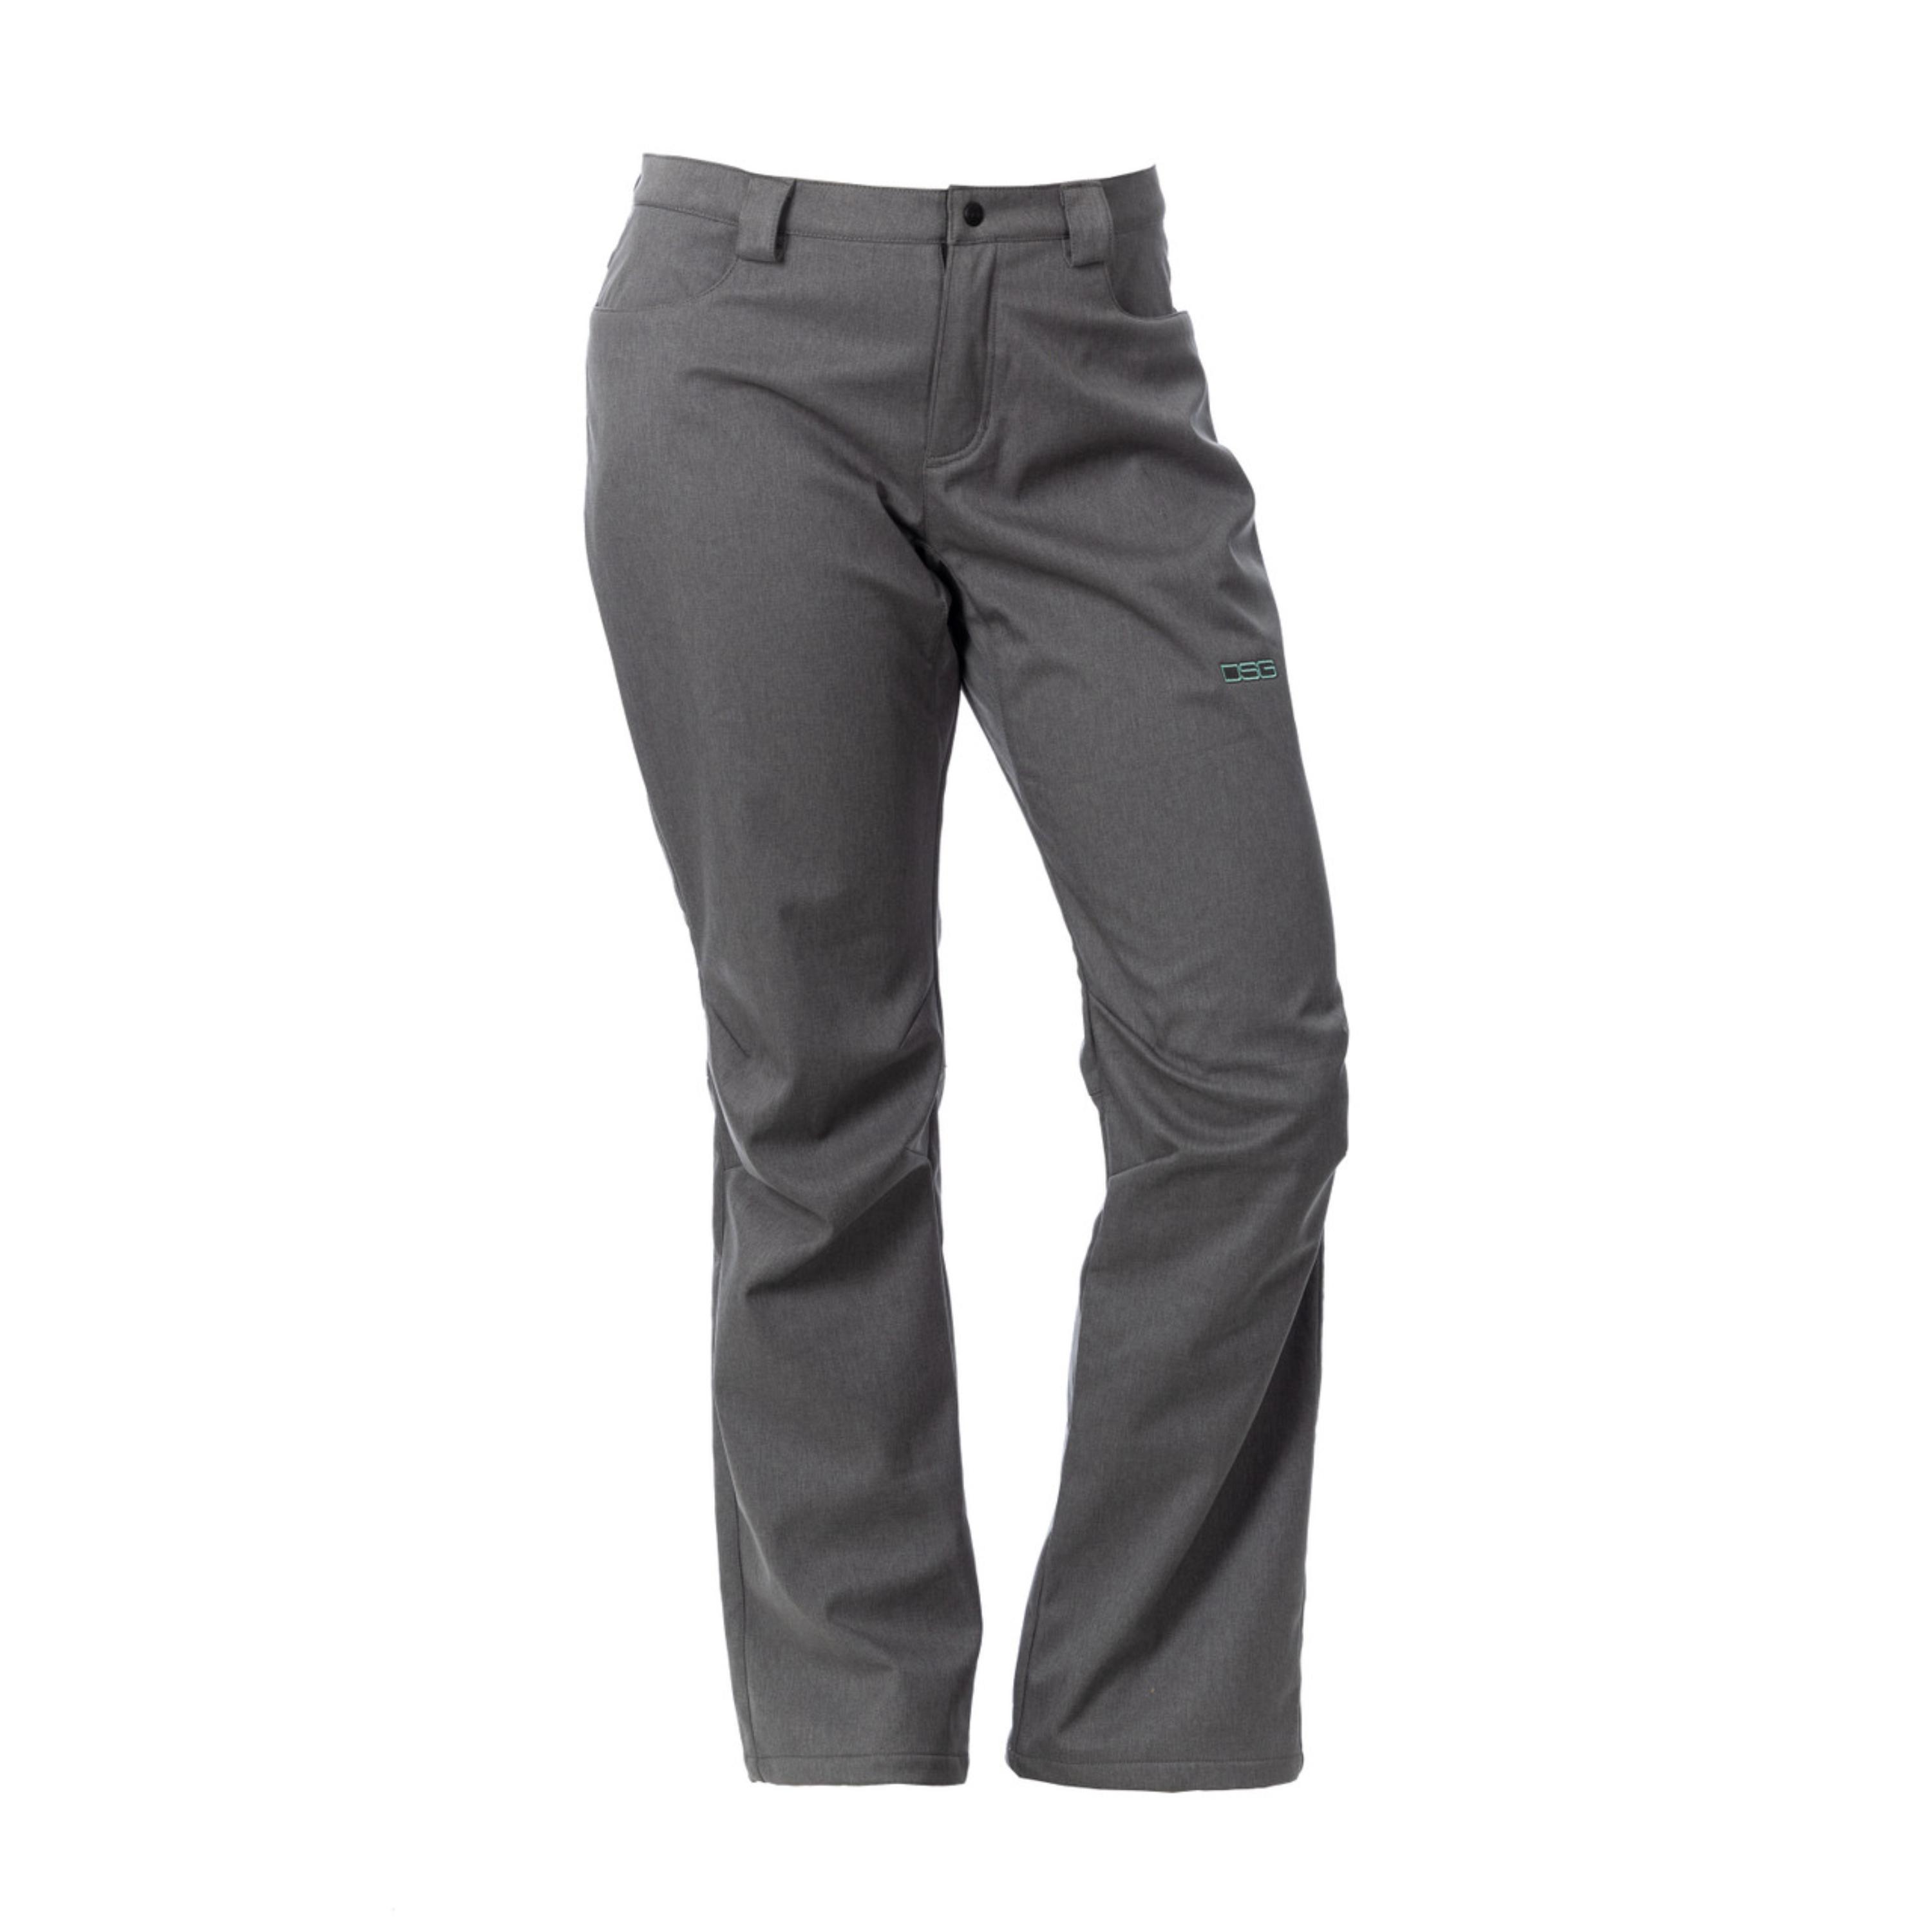 DSG Outerwear - Pants, Climate Control